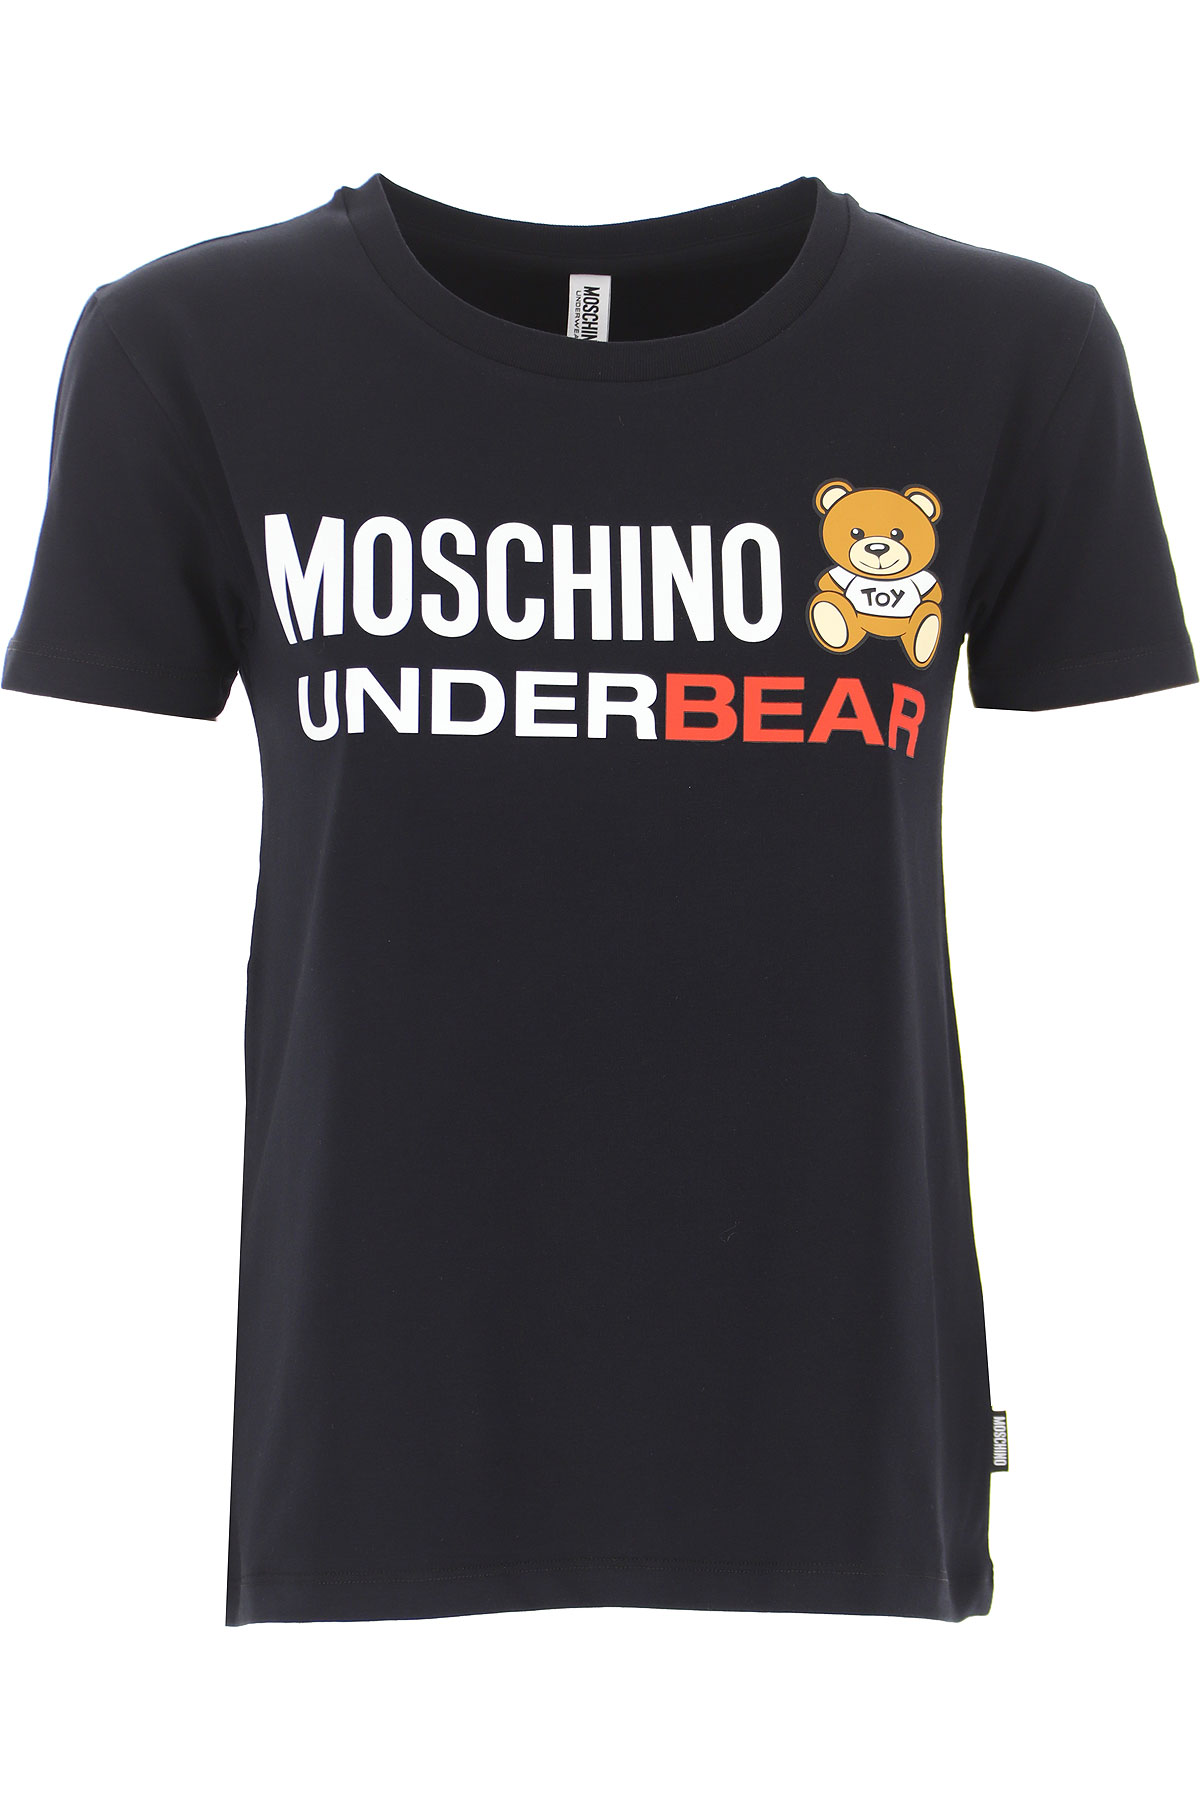 moschino 2019 t shirt